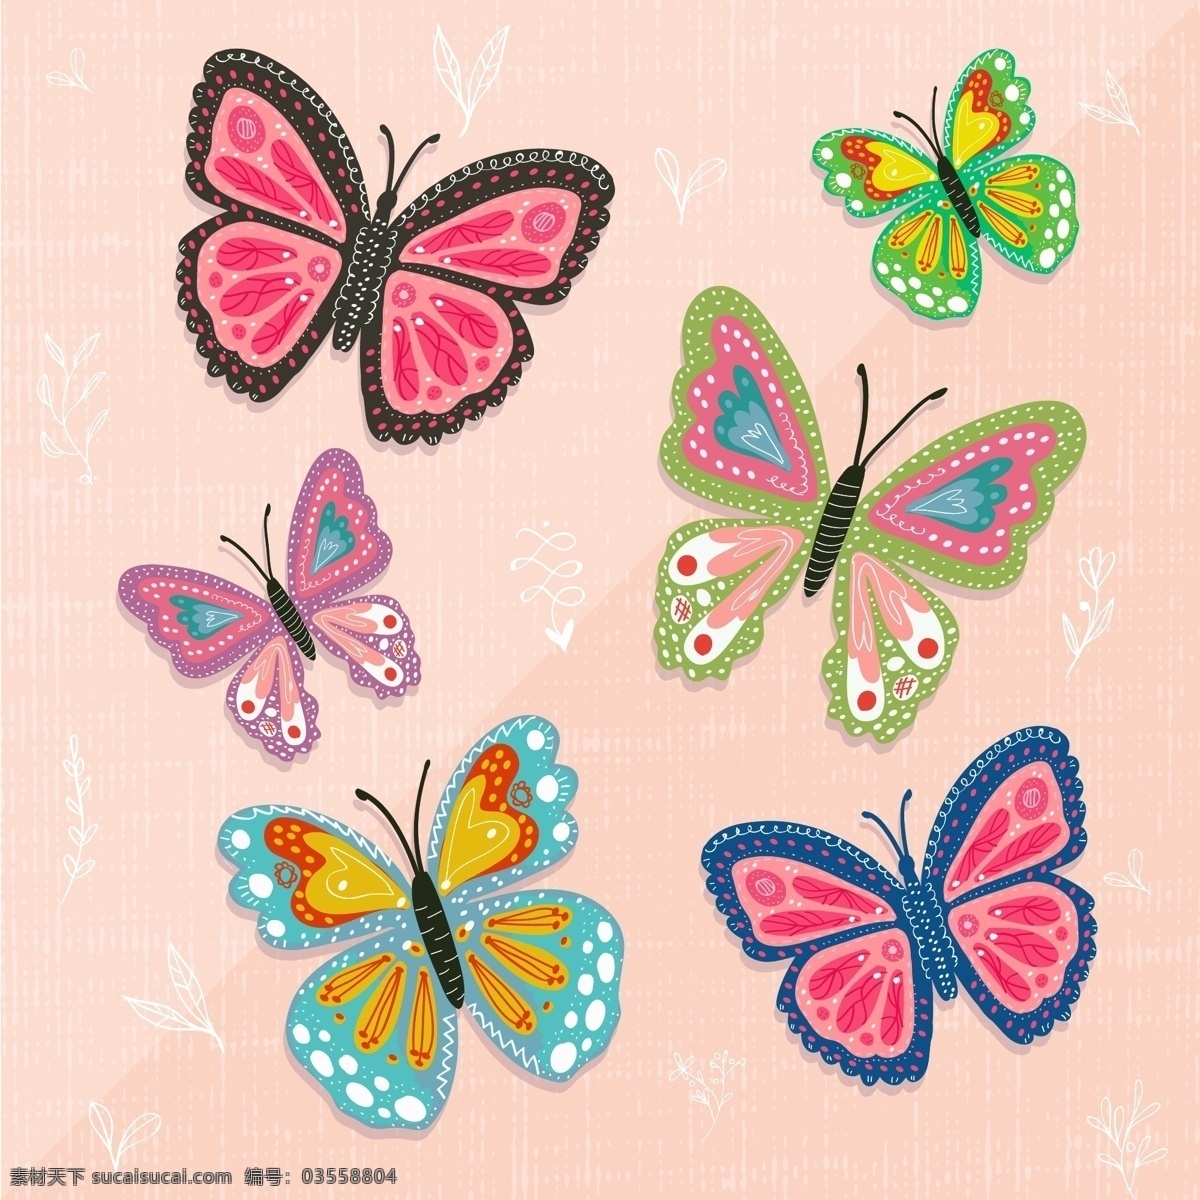 彩色 蝴蝶 叶子 昆虫 矢量图 矢量 高清图片